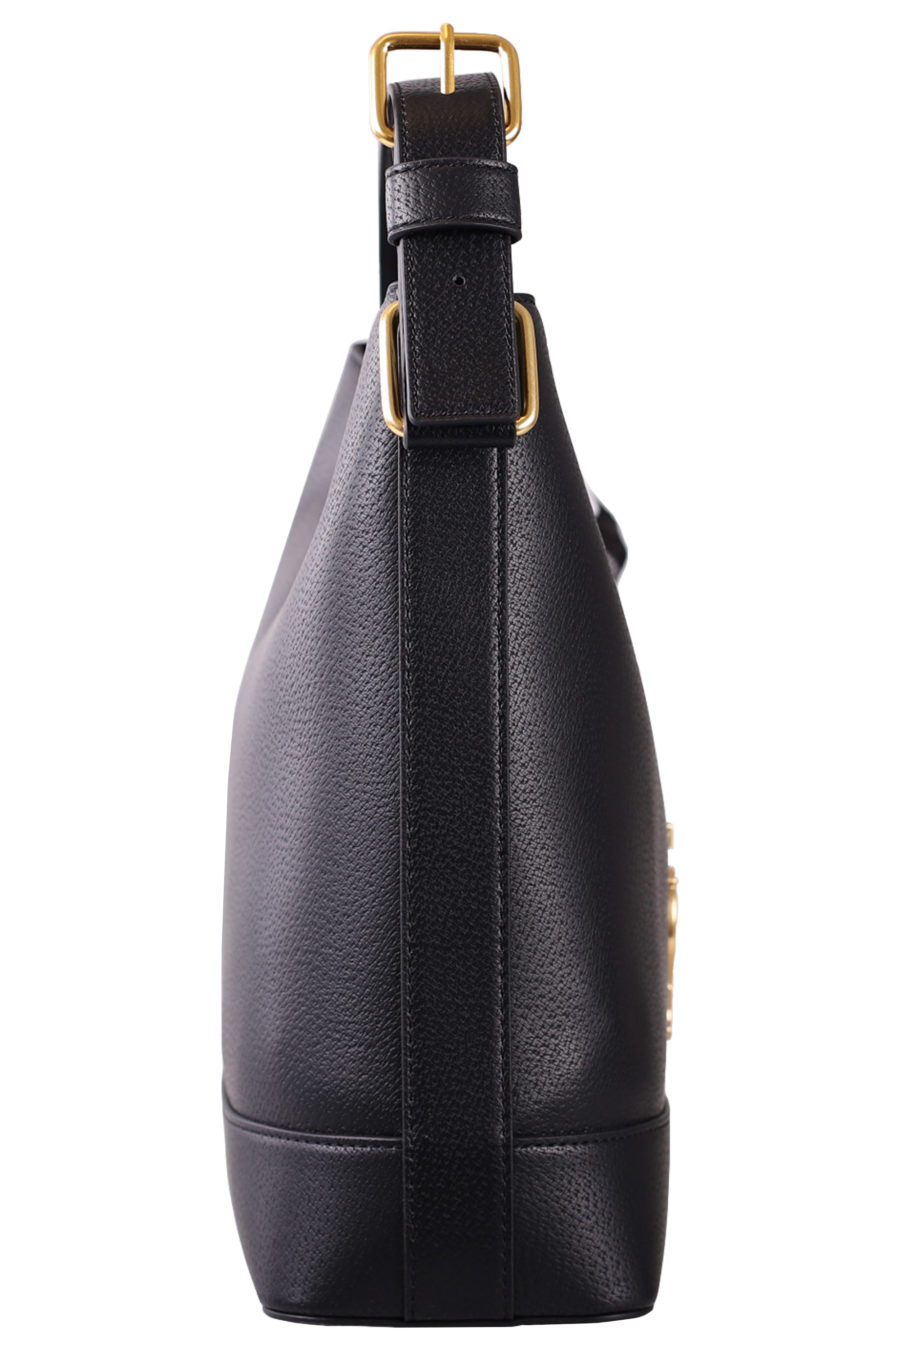 Black handbag with scarf - IMG 7062